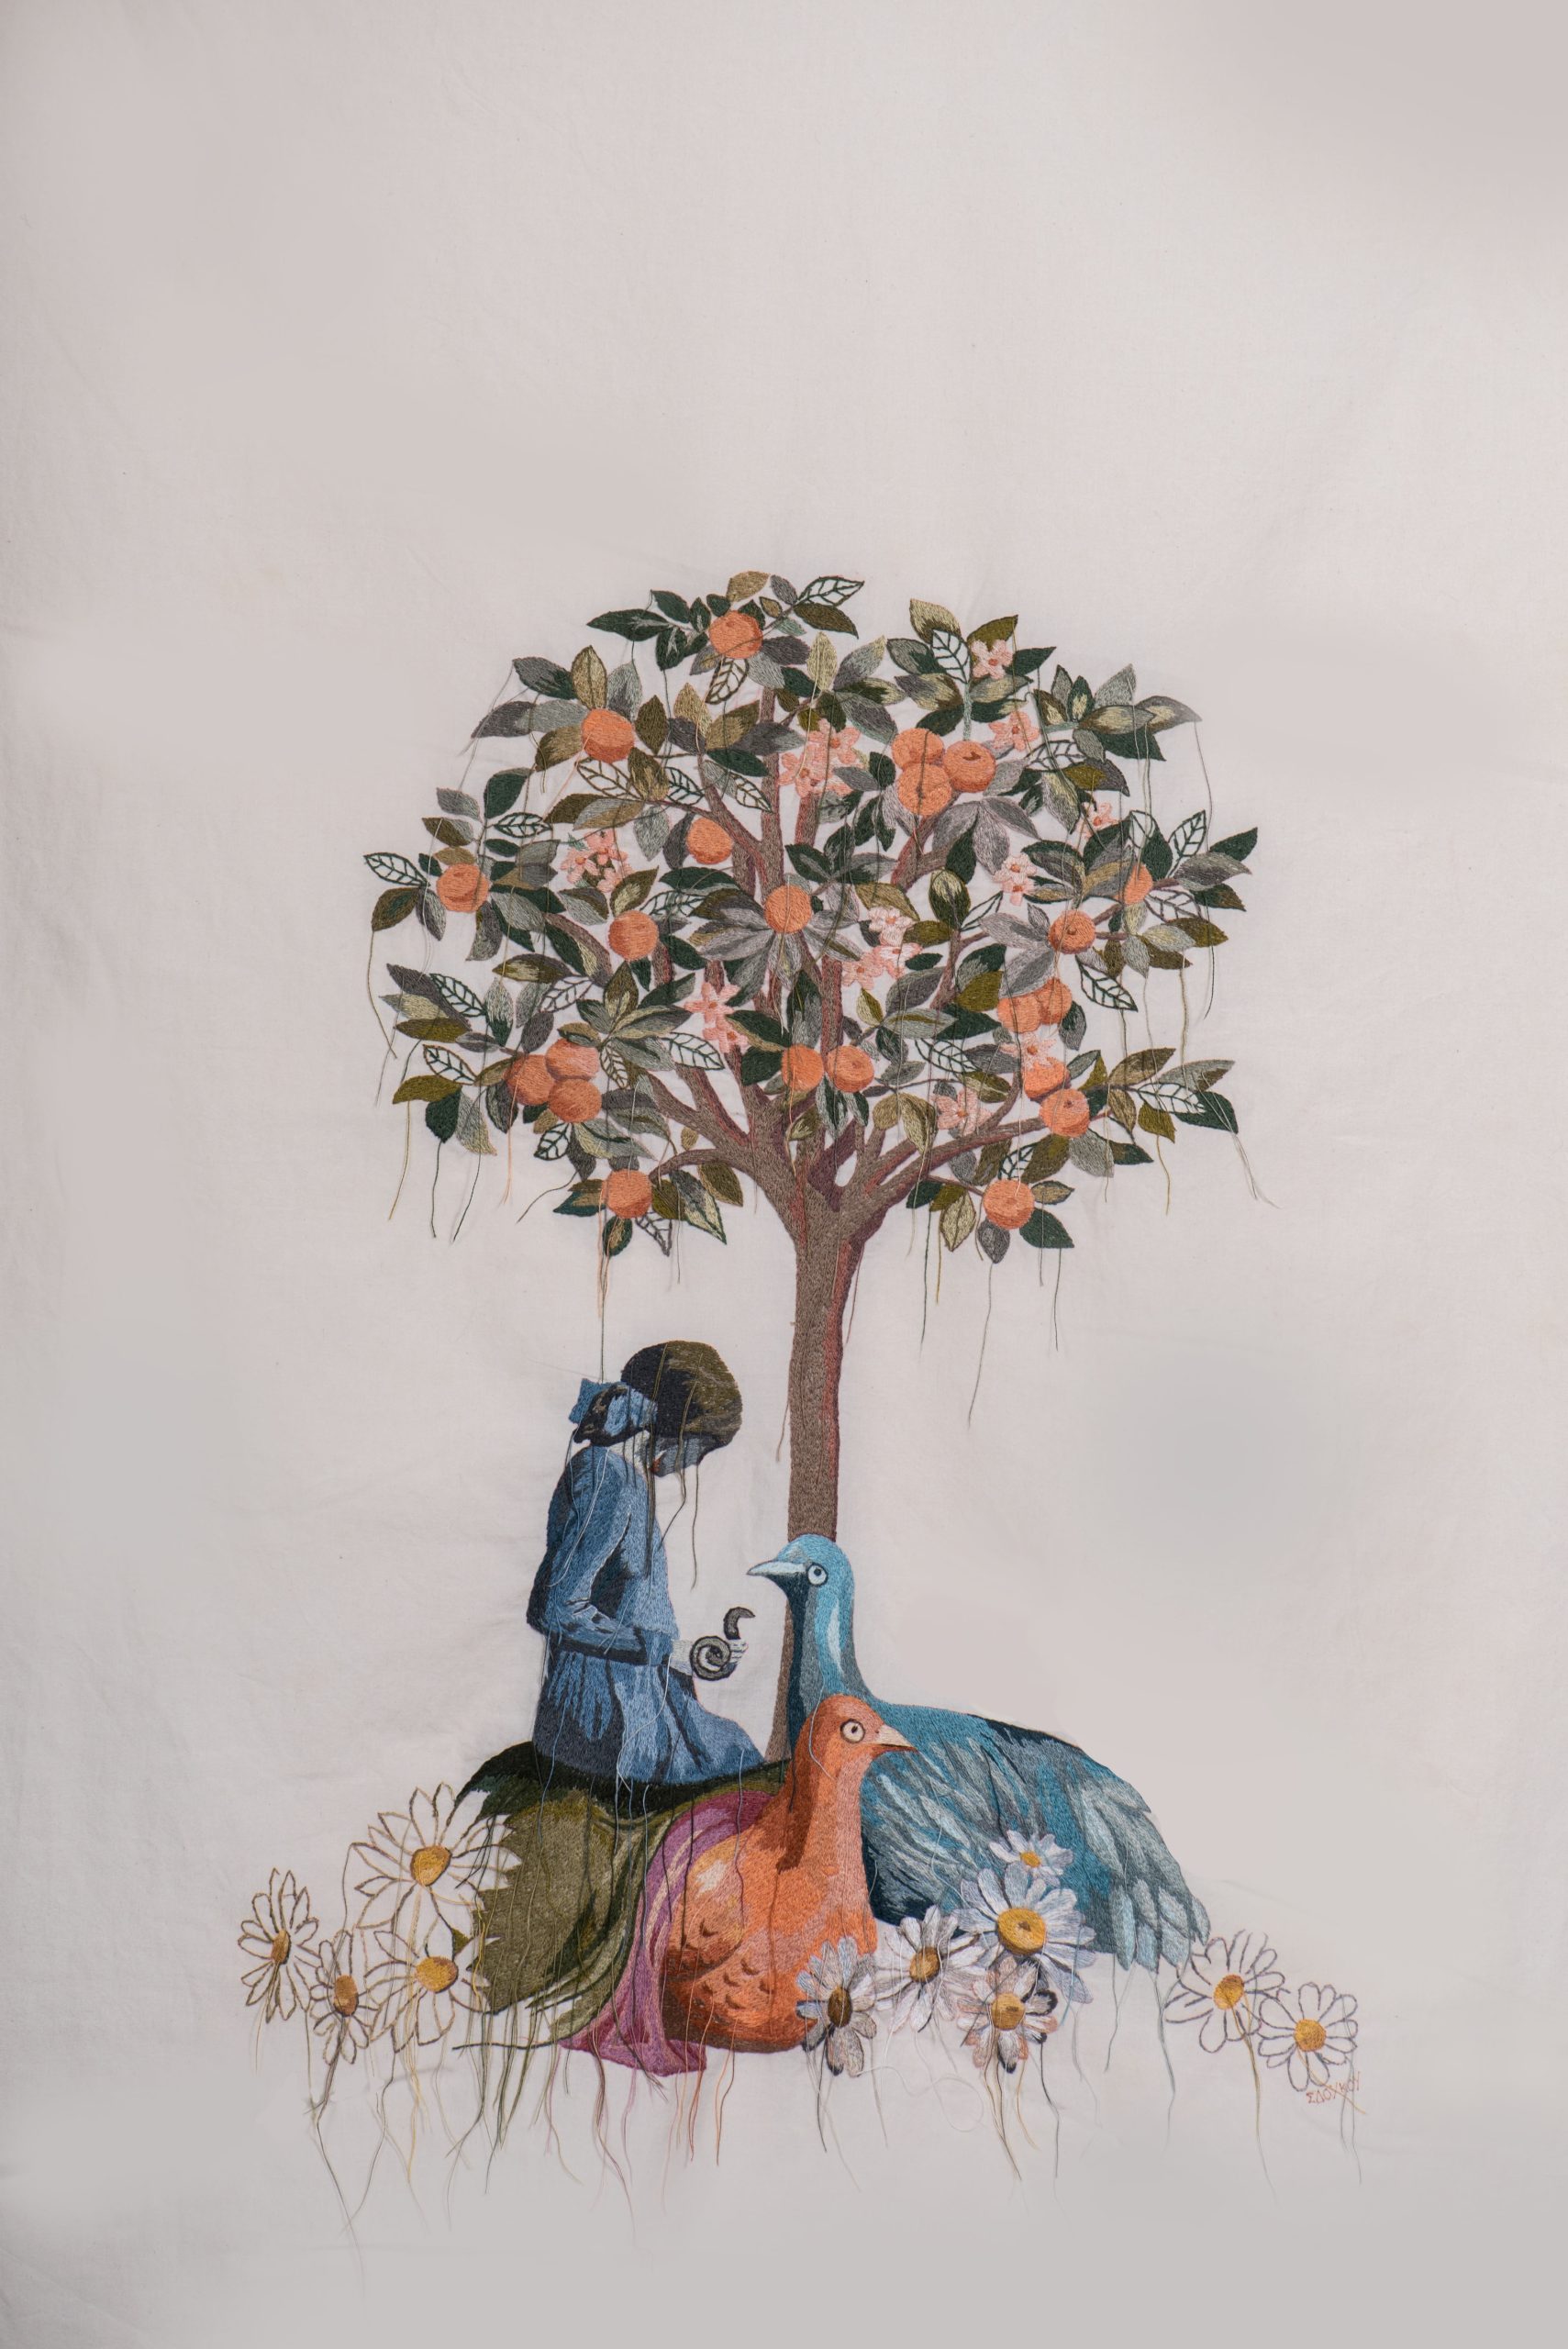 Threads of fantasy: Έκθεση της Ιφιγένειας Σδούκου στην αίθουσα τέχνης «έκφραση - γιάννα γραμματοπούλου»